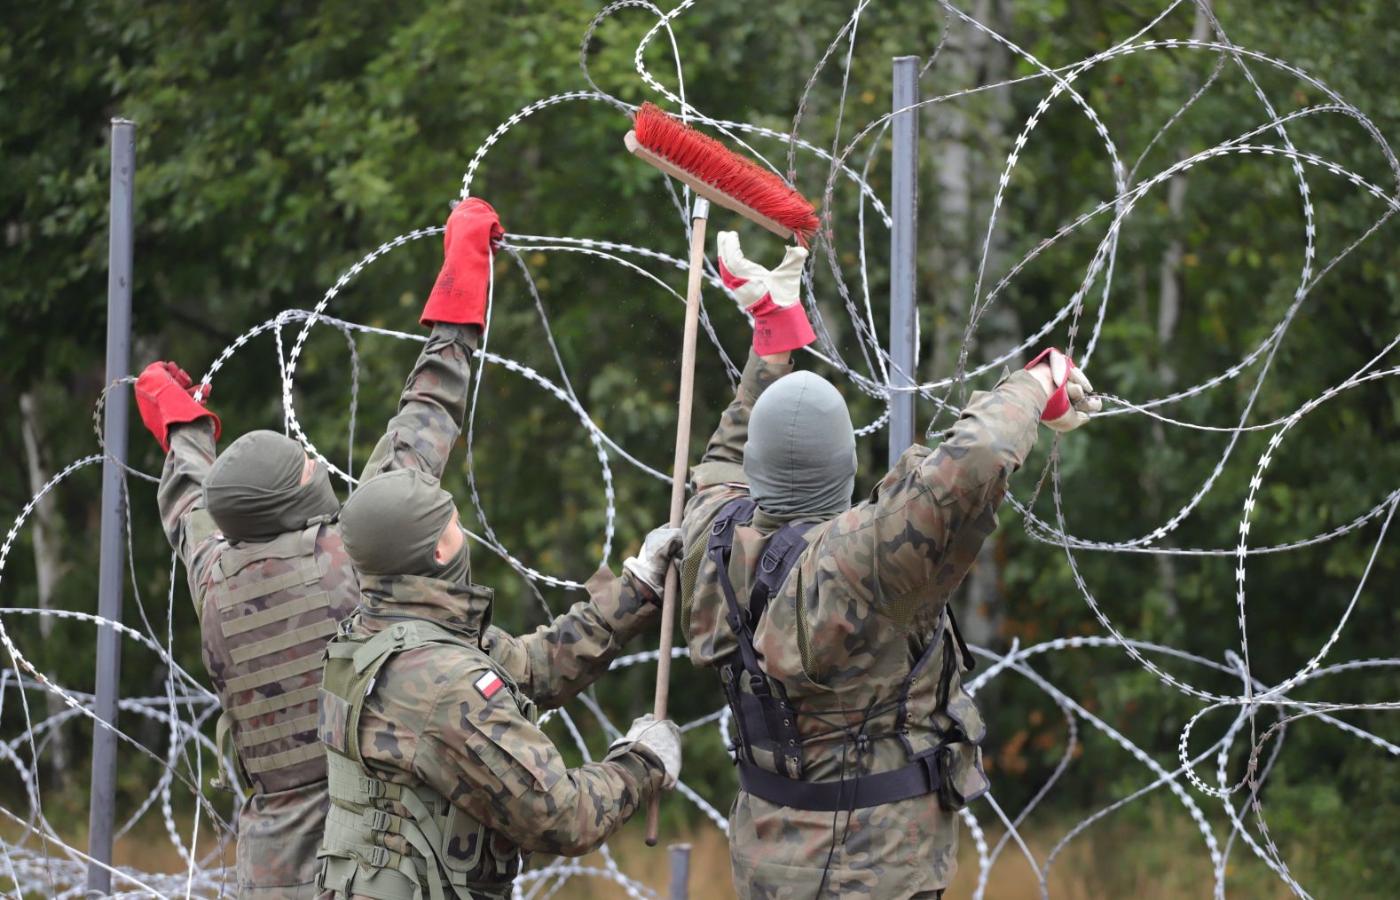 Wojsko podczas budowy płotu z drutu kolczastego wzdłuż granicy polsko-białoruskiej, przez którą przepychani są z Białorusi do Polski nielegalni imigranci. Sierpień 2021 r.